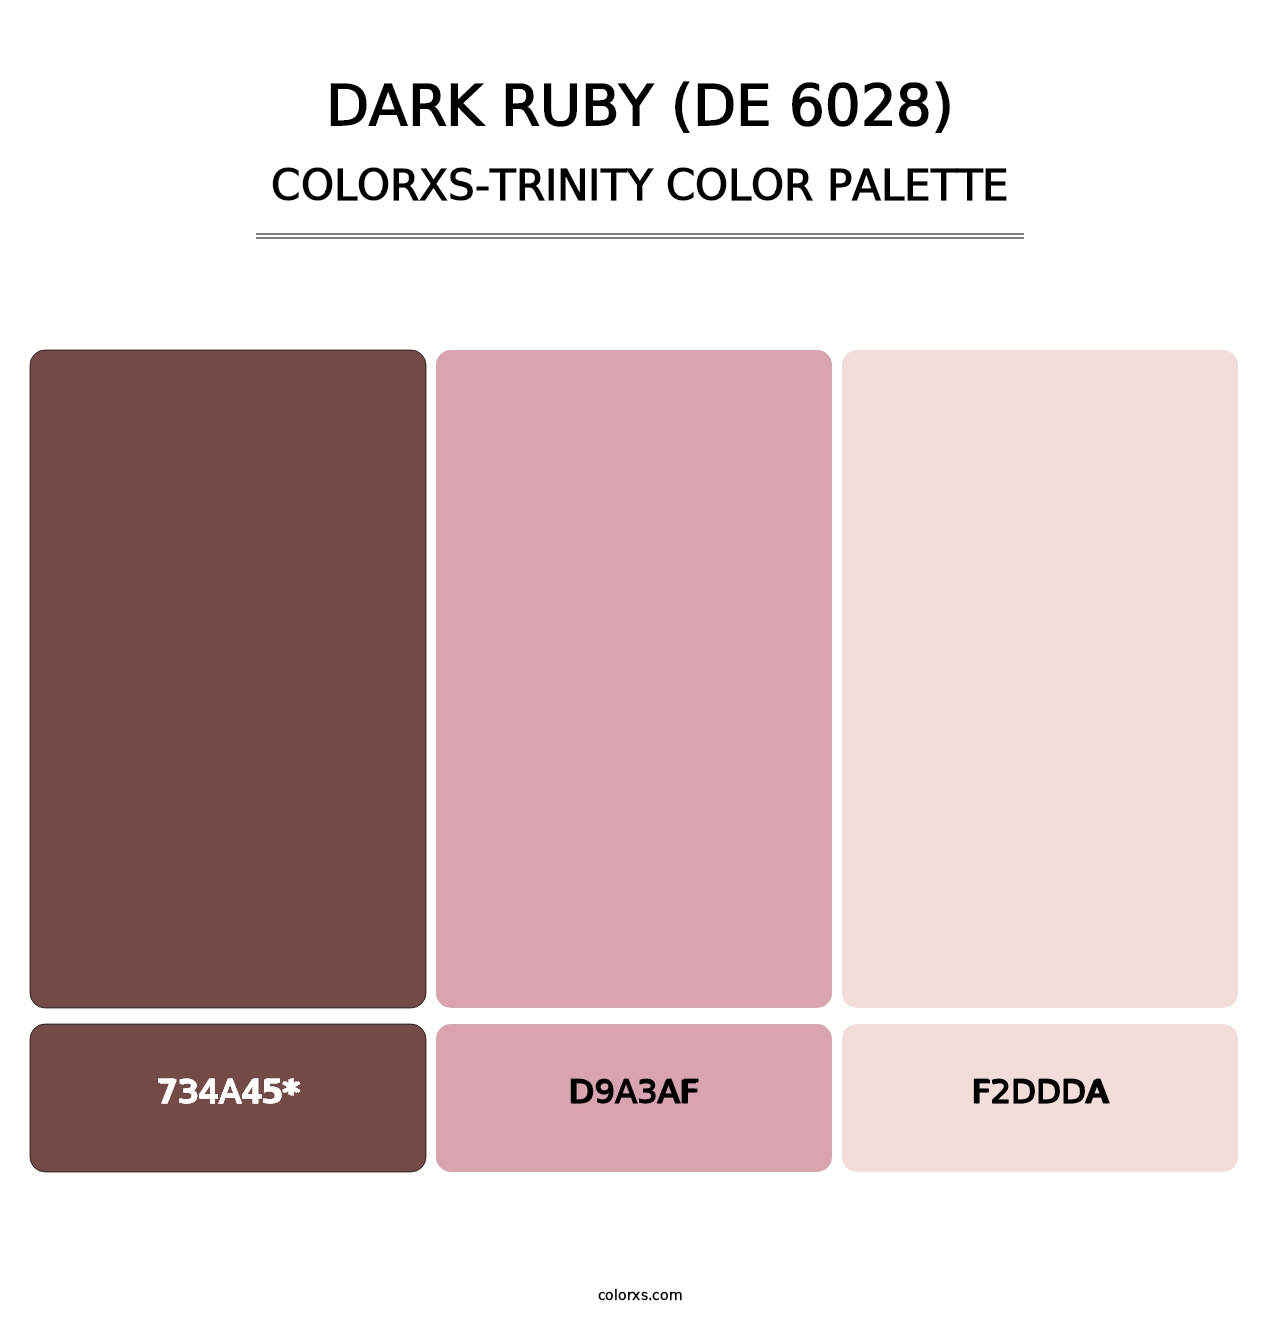 Dark Ruby (DE 6028) - Colorxs Trinity Palette